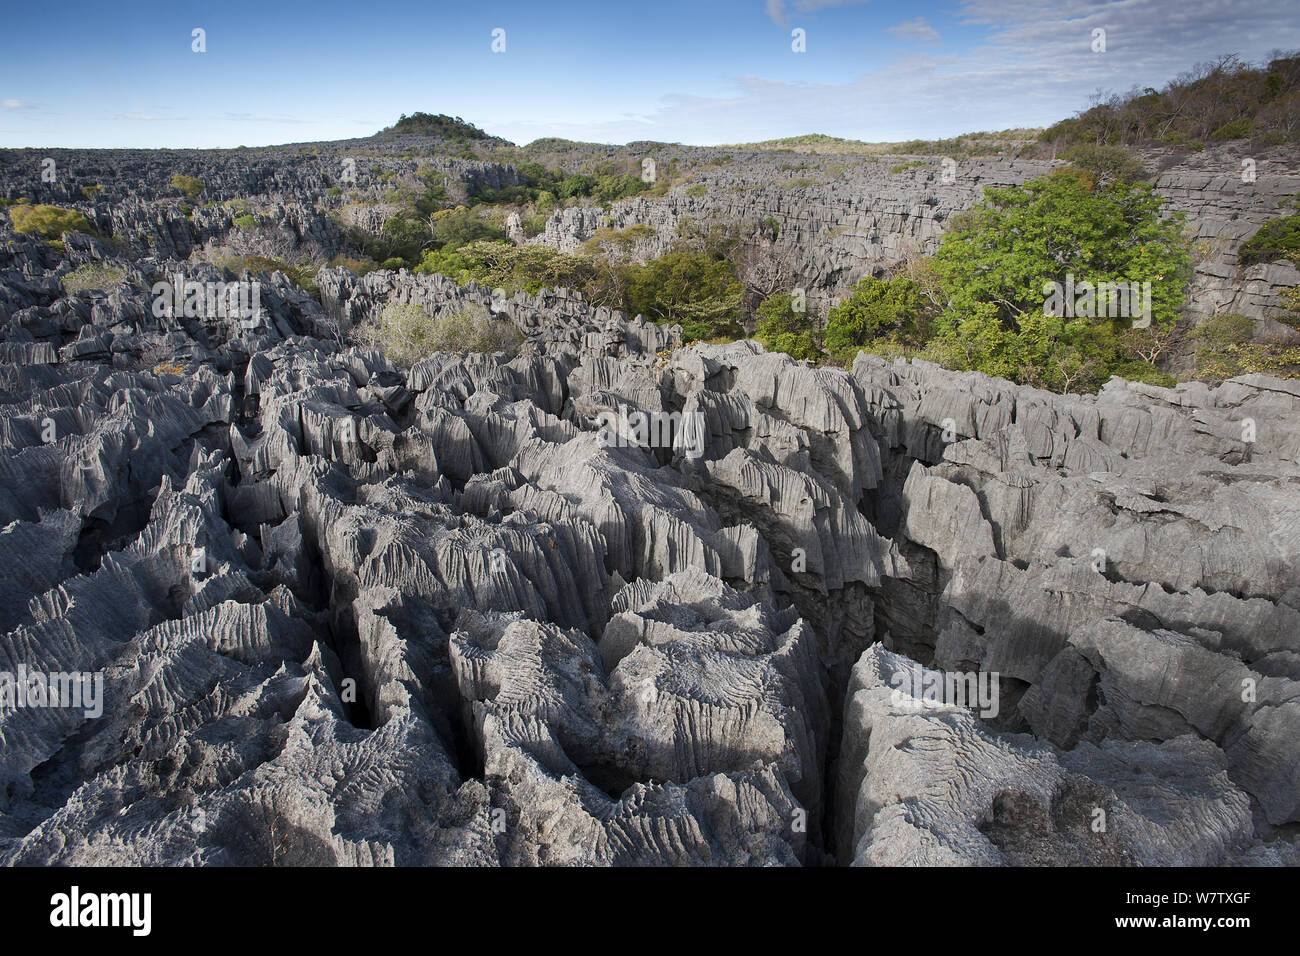 Tsingy - karst limestone formations, Ankarana NP, Madagascar, June 2013. Stock Photo